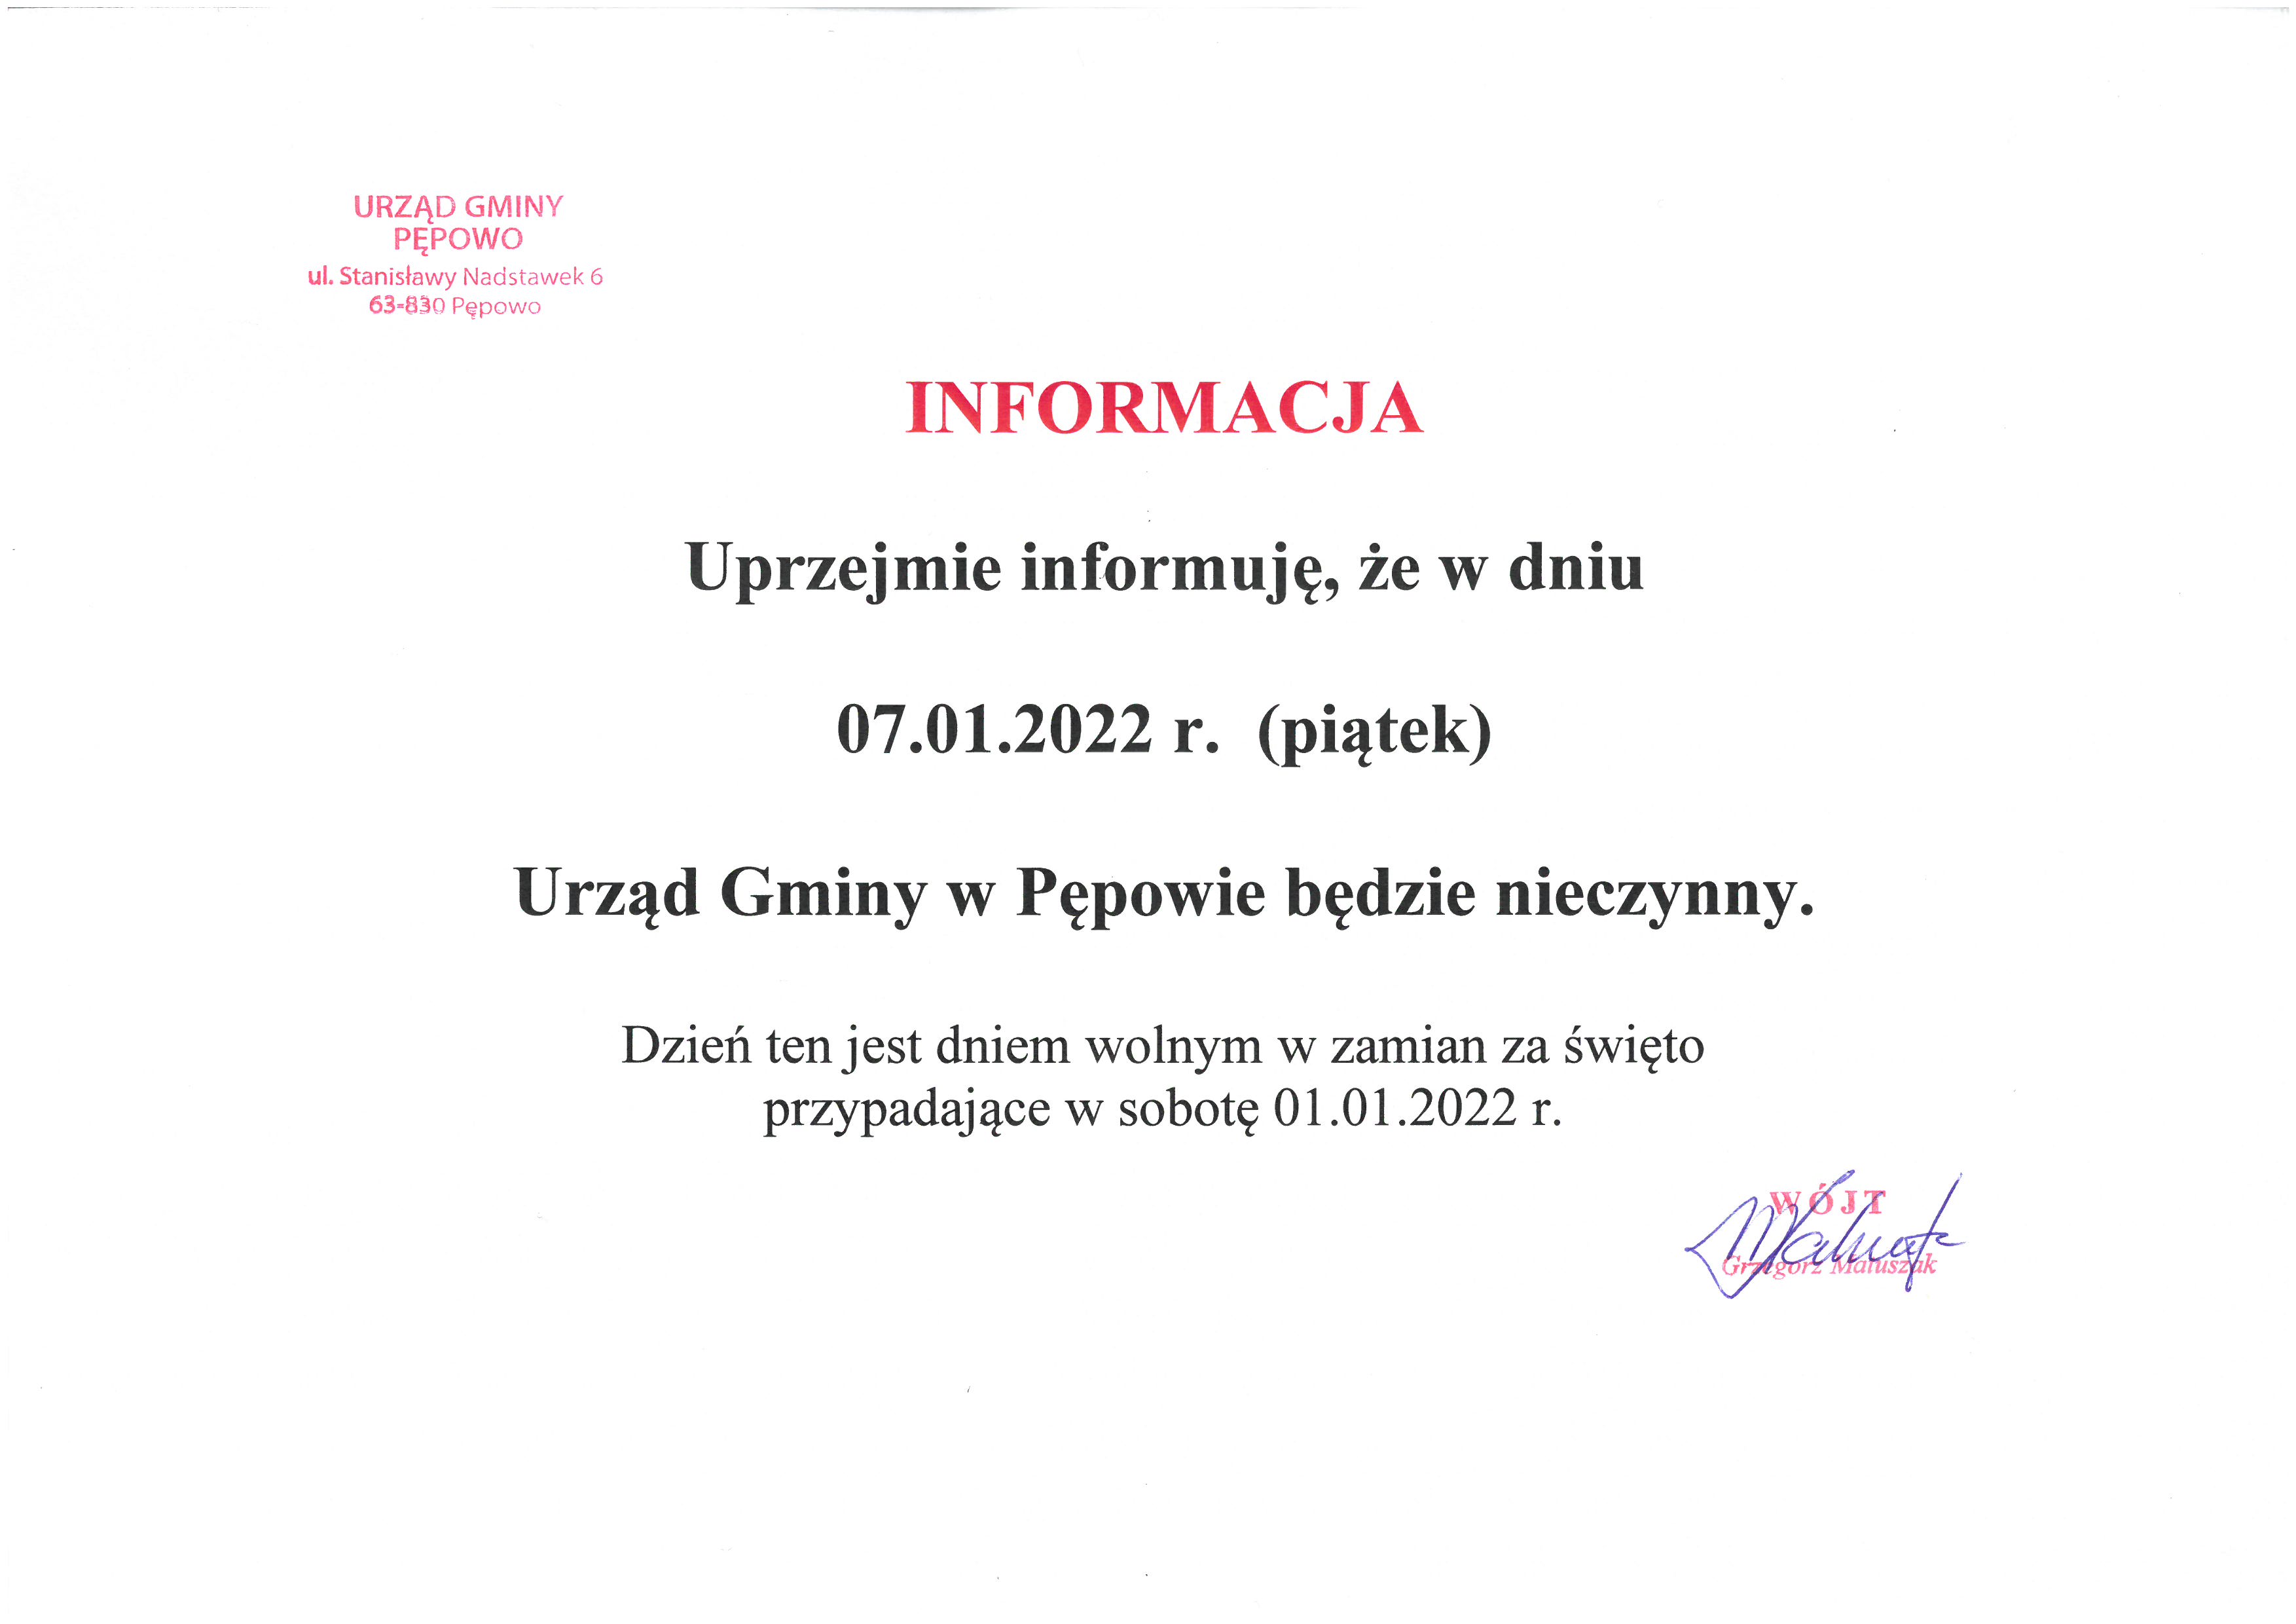 Praca 7 stycznia- Uprzejmie informujemy, że w dniu 7 stycznia 2021 r. Urząd Gminy w Pępowie będzie nieczynny. Dzień ten będzie dniem wolnym za święto przypadajace 1.01.2022 r.